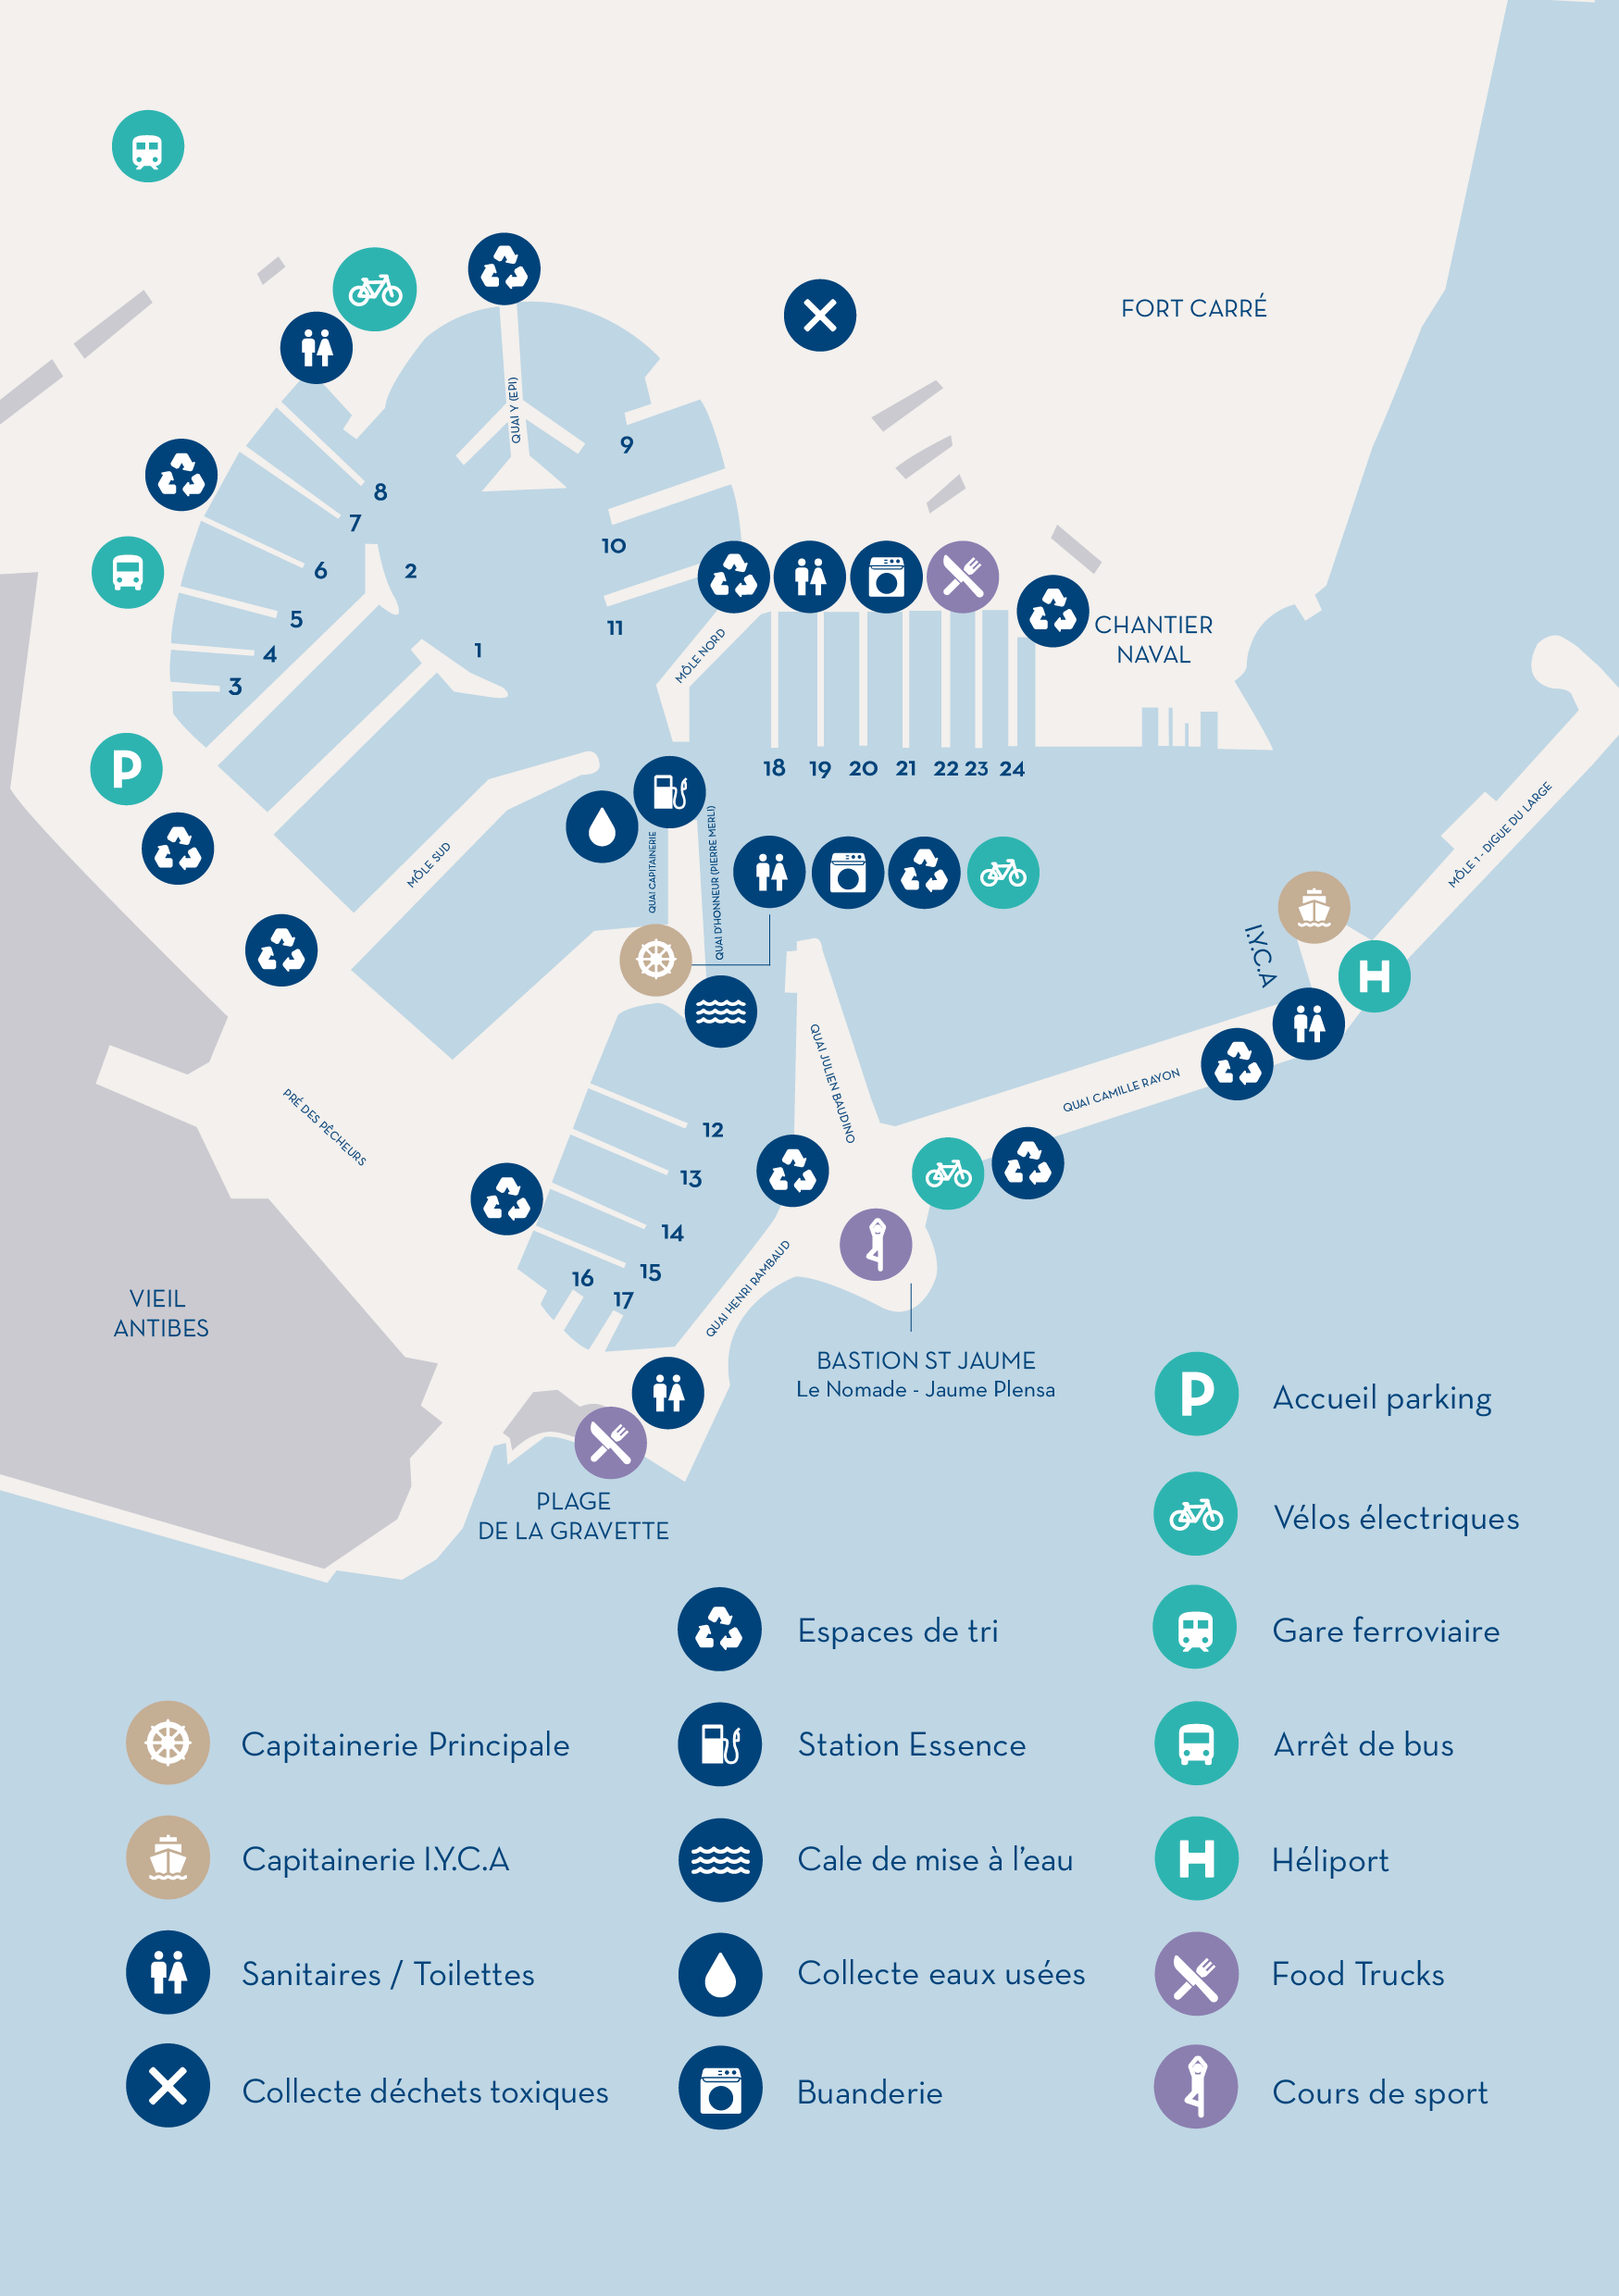 Plan détaillé du Port Vauban avec légende